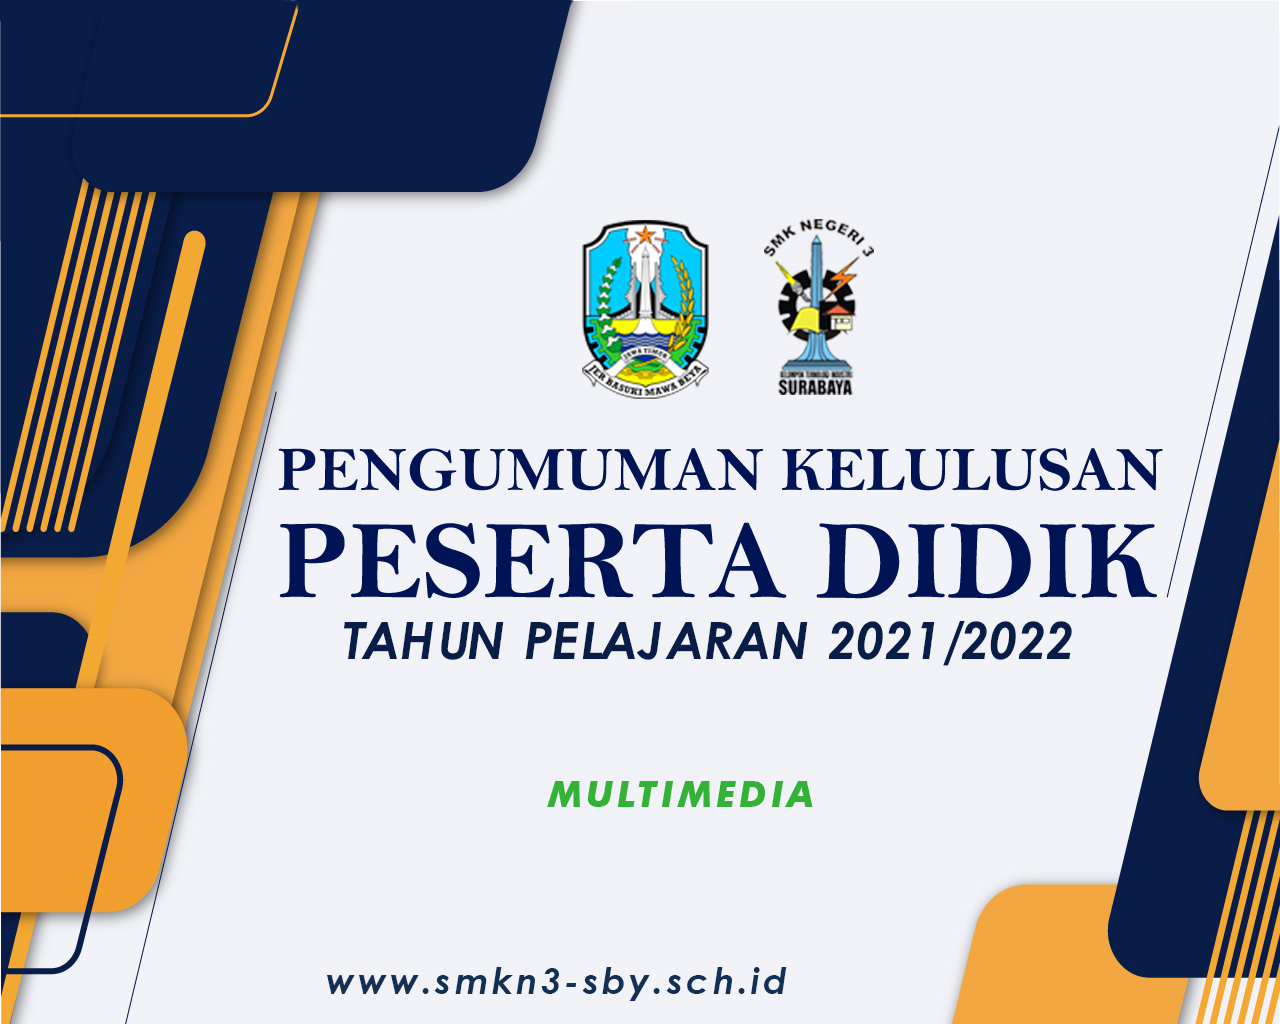 MULTIMEDIA 2021/2022